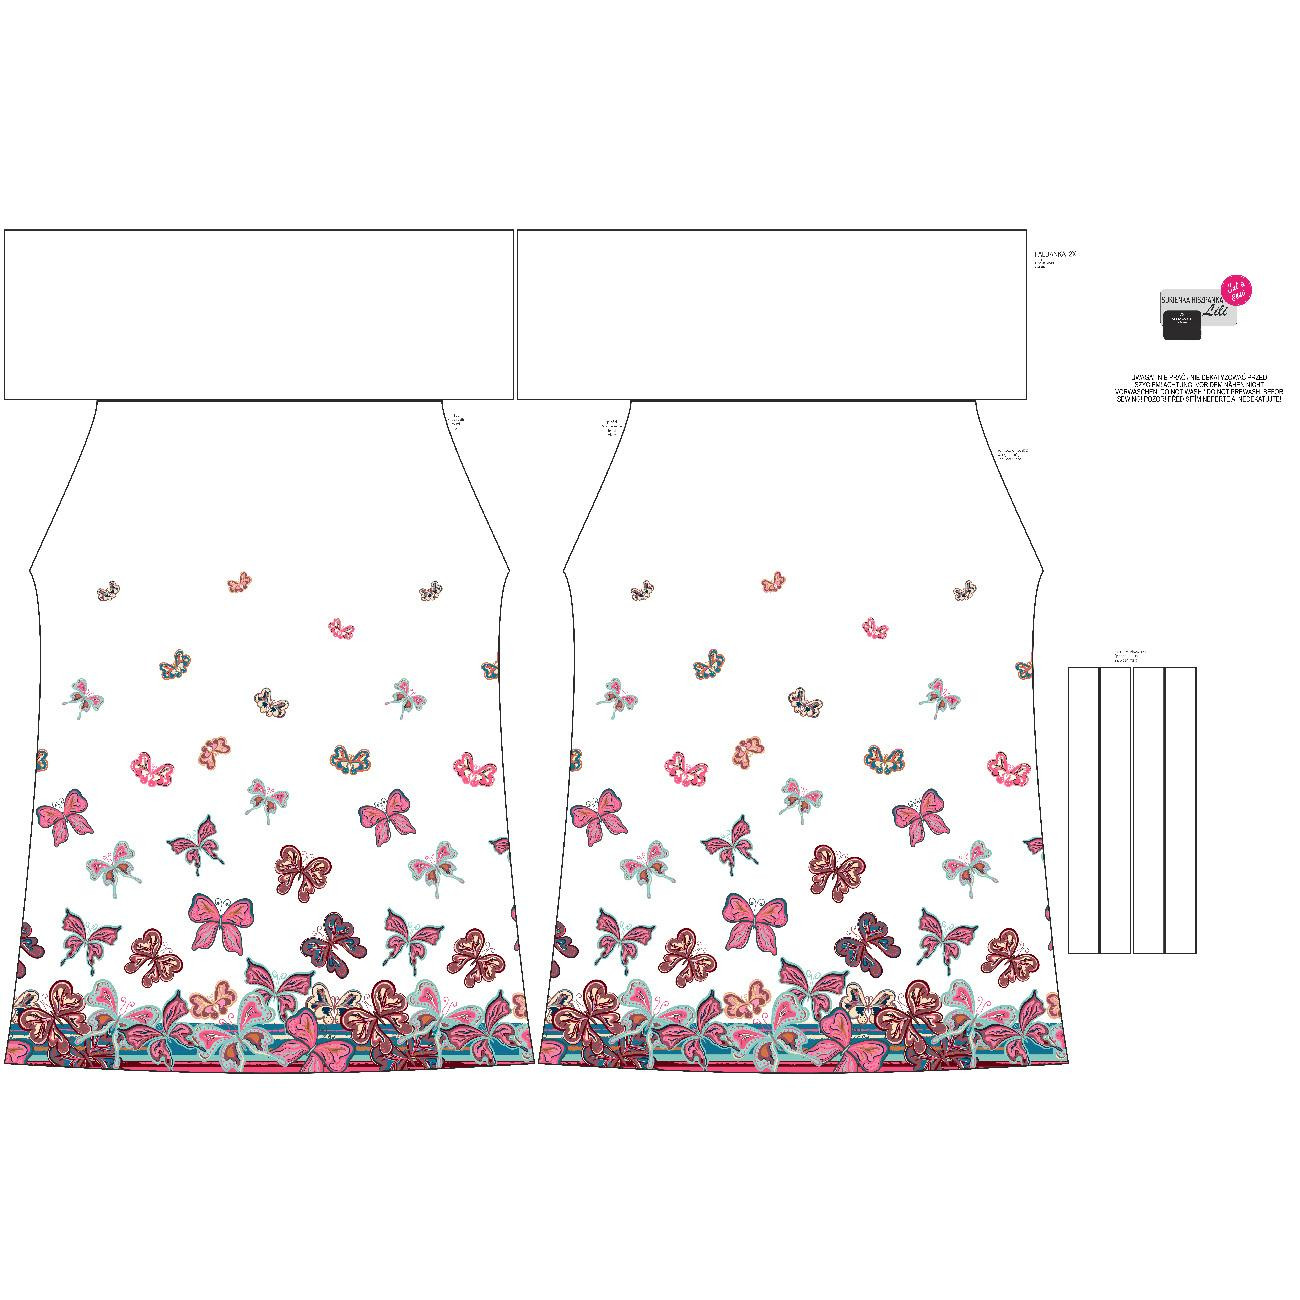 Sukienka hiszpanka (LILI) - MOTYLE (wzór 1 różowy) / biały - zestaw do uszycia